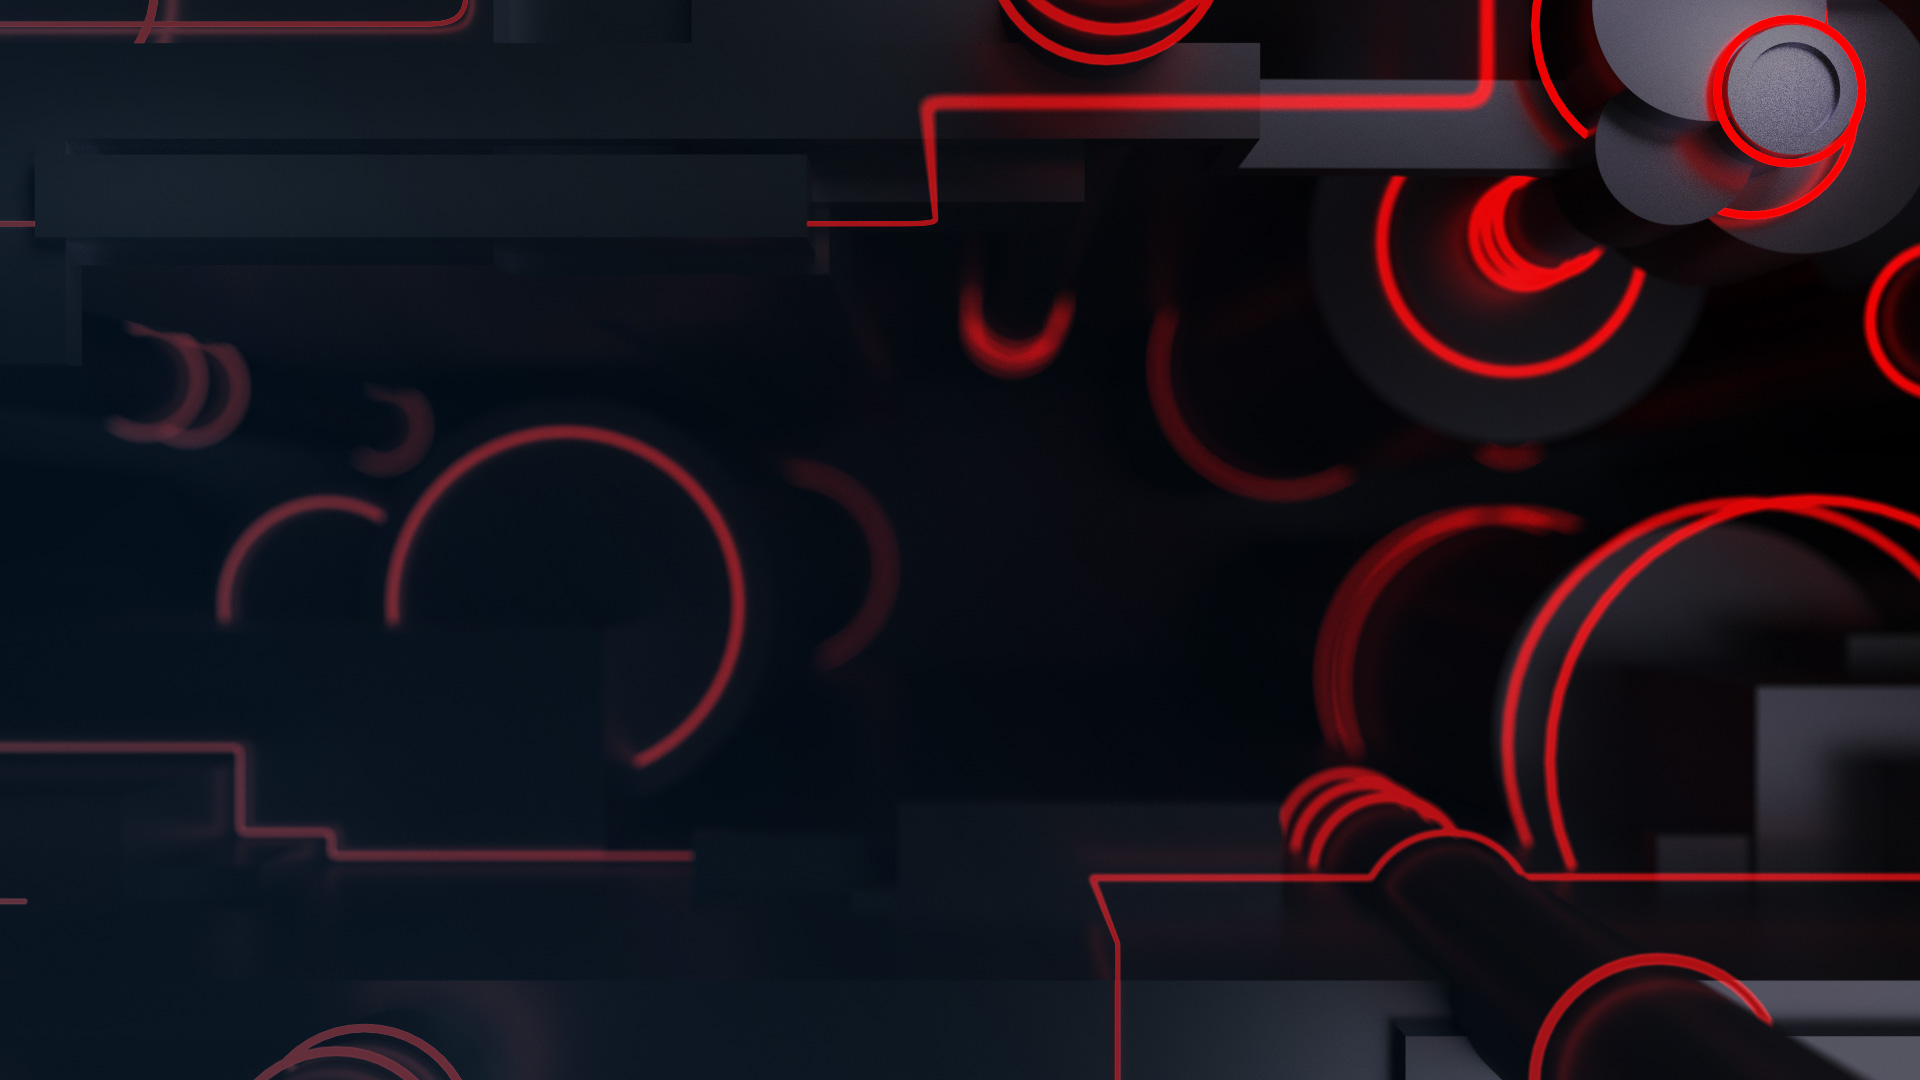 x1bg-3d-neon2-red: Hãy khám phá x1bg-3d-neon2-red sắc sảo và sống động. Hình ảnh ẩn chứa những điều bí mật động trời, mang đến cho bạn trải nghiệm hoàn toàn mới khi chơi game.